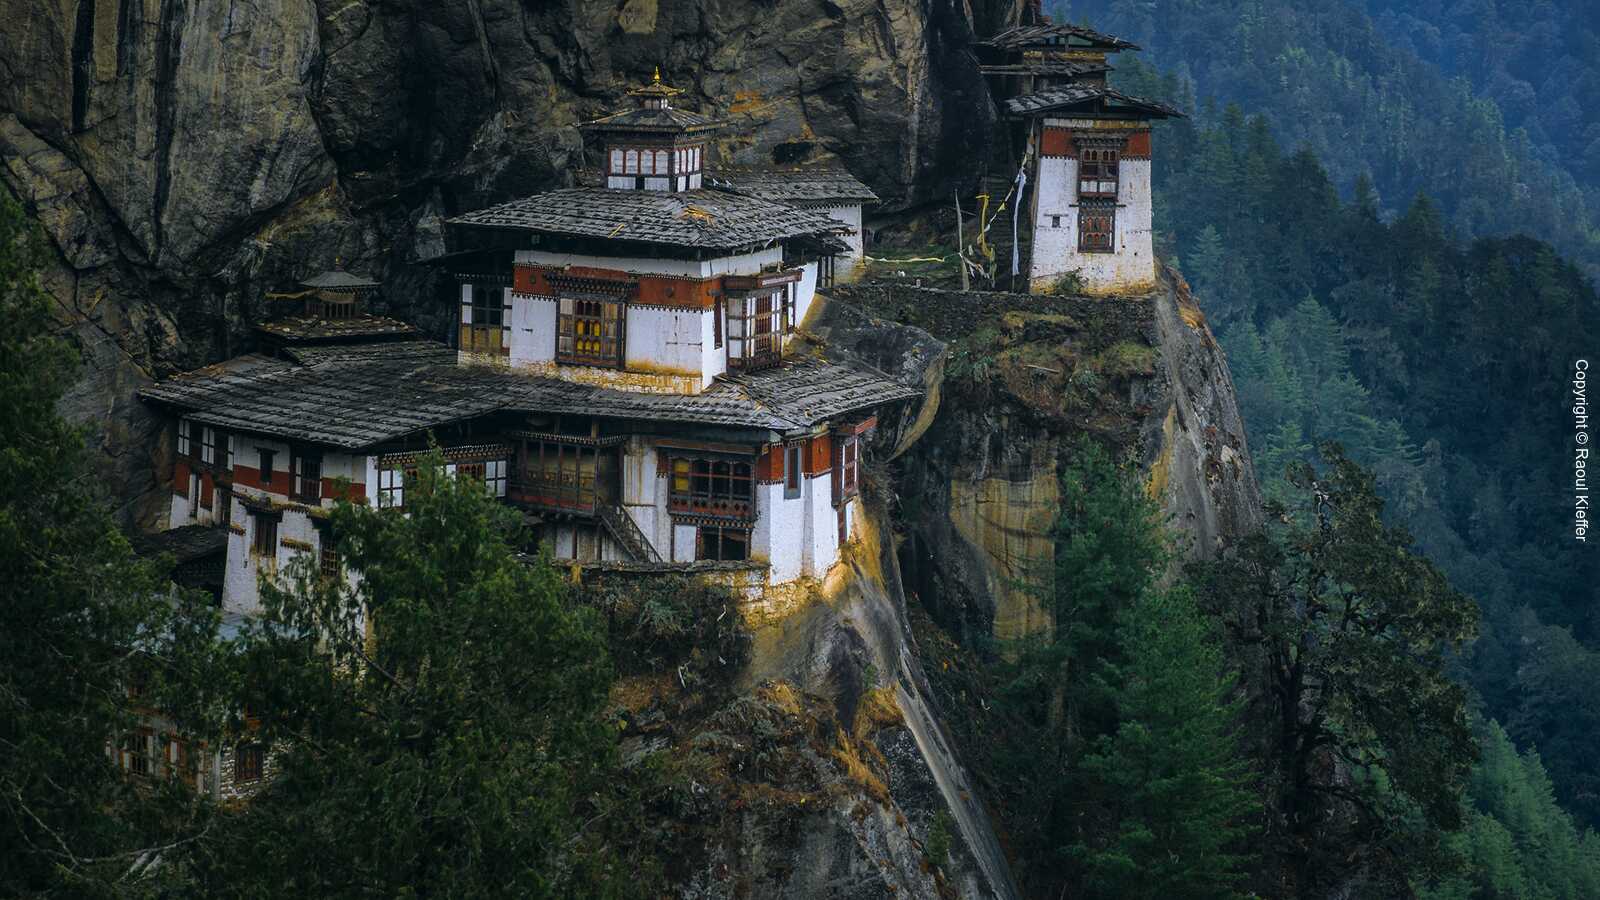 Other Monasteries in Bhutan